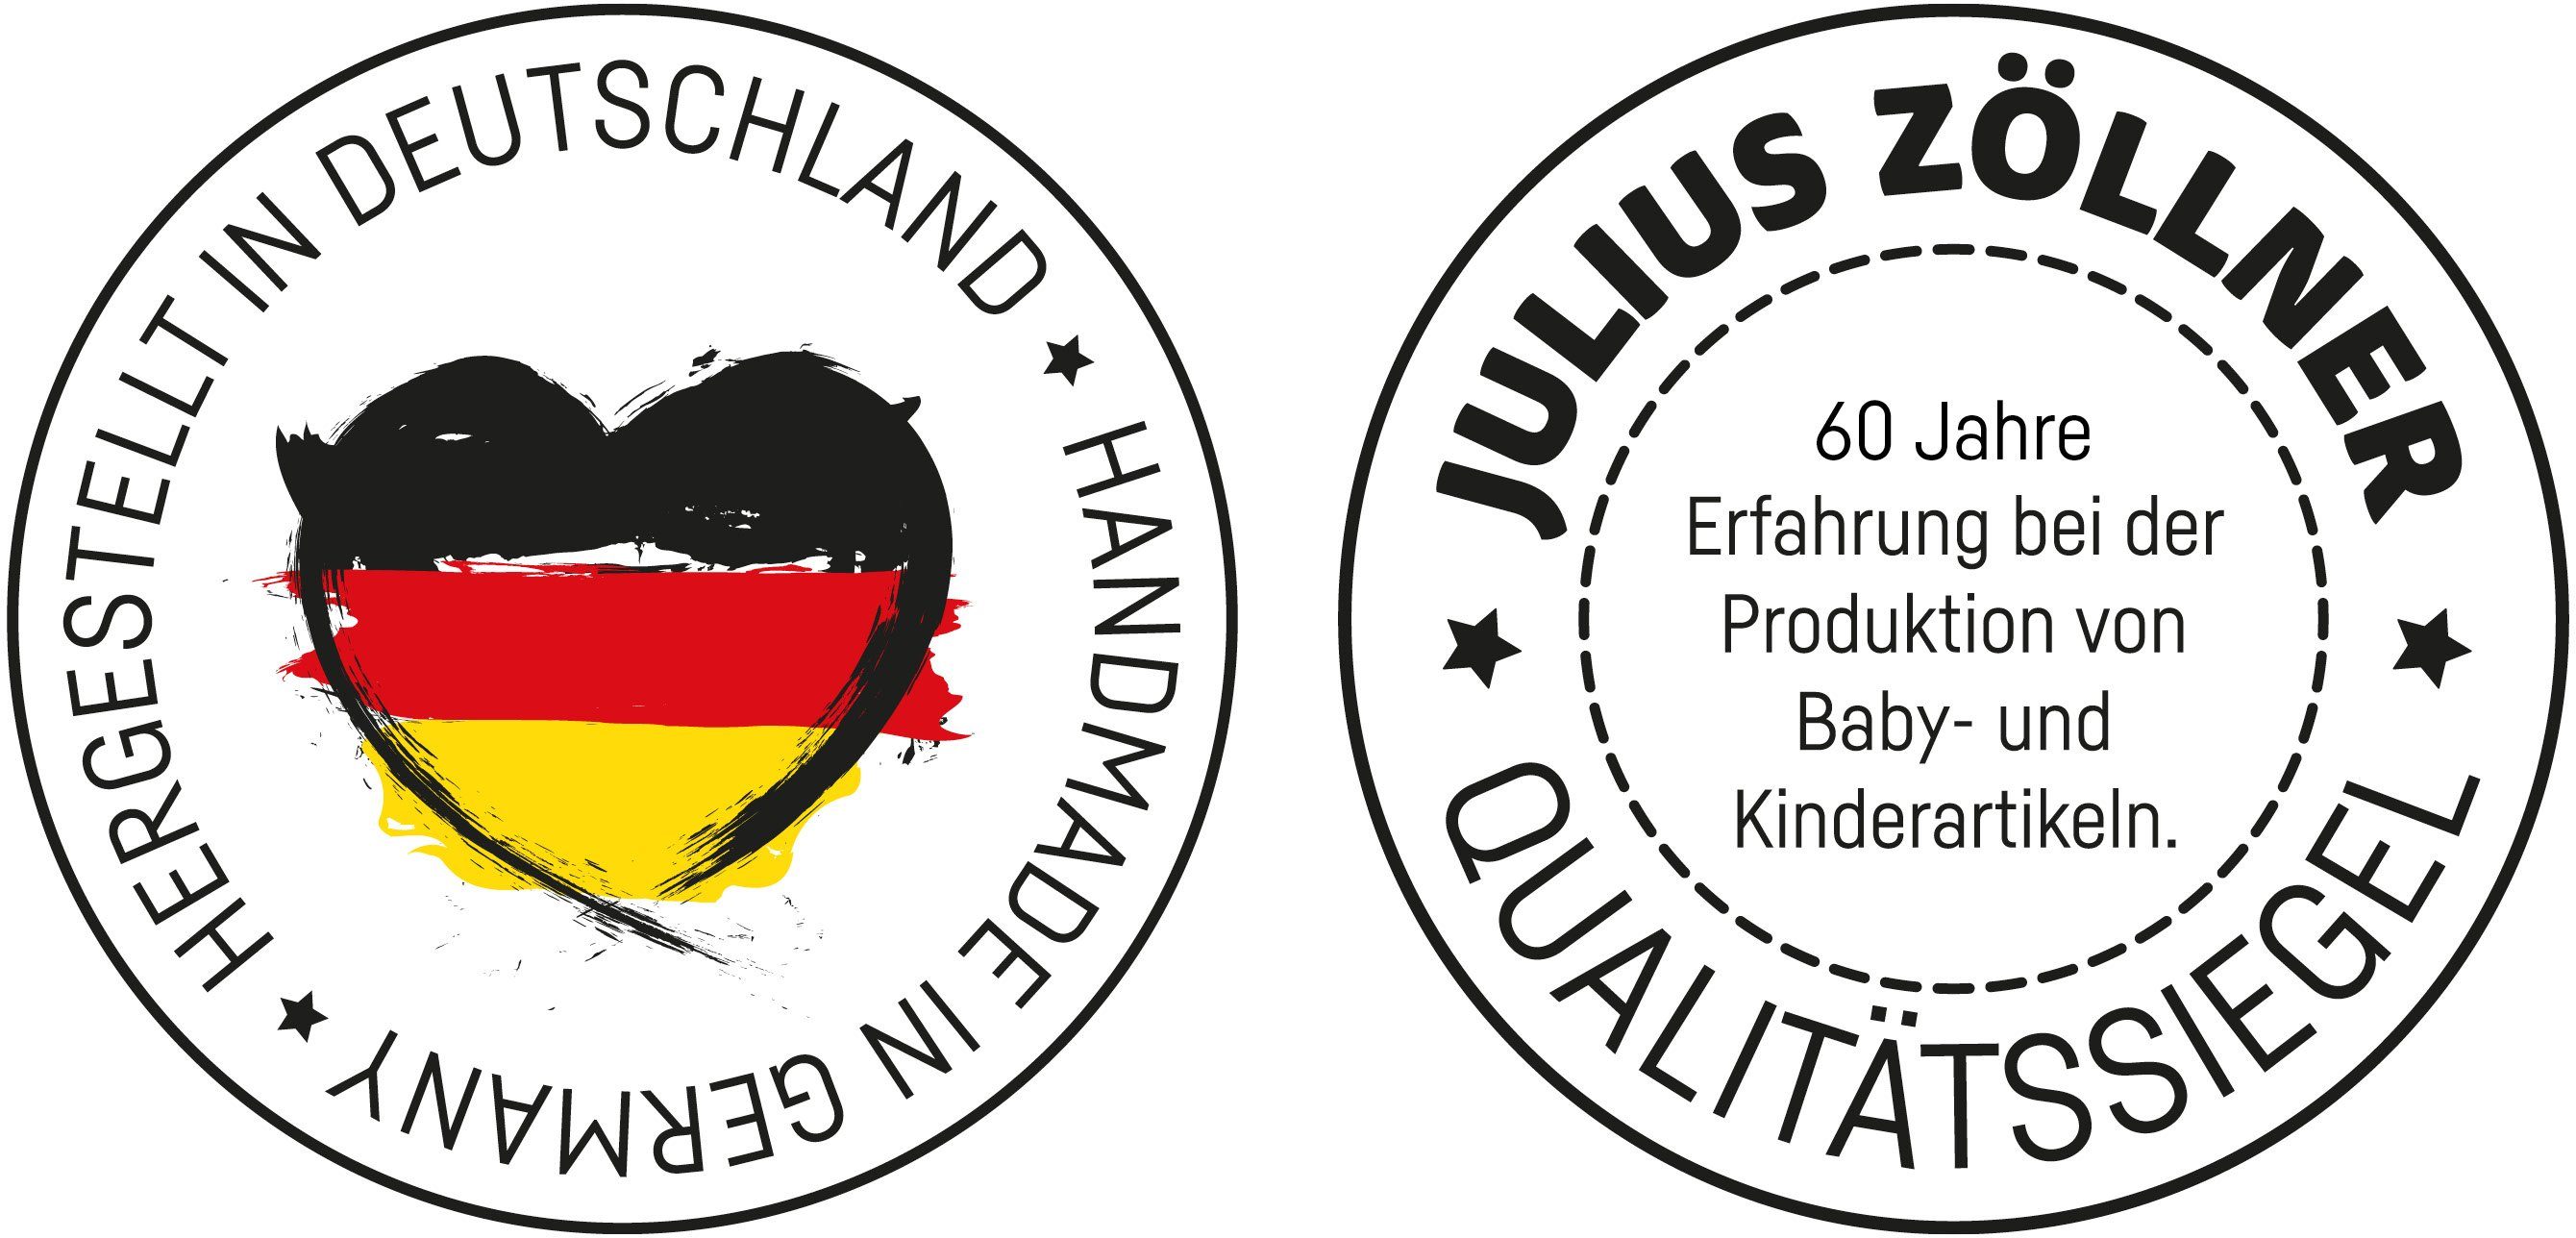 Zöllner Eule, 2-Keil, Häschen in Wickelauflage Made Julius und Germany